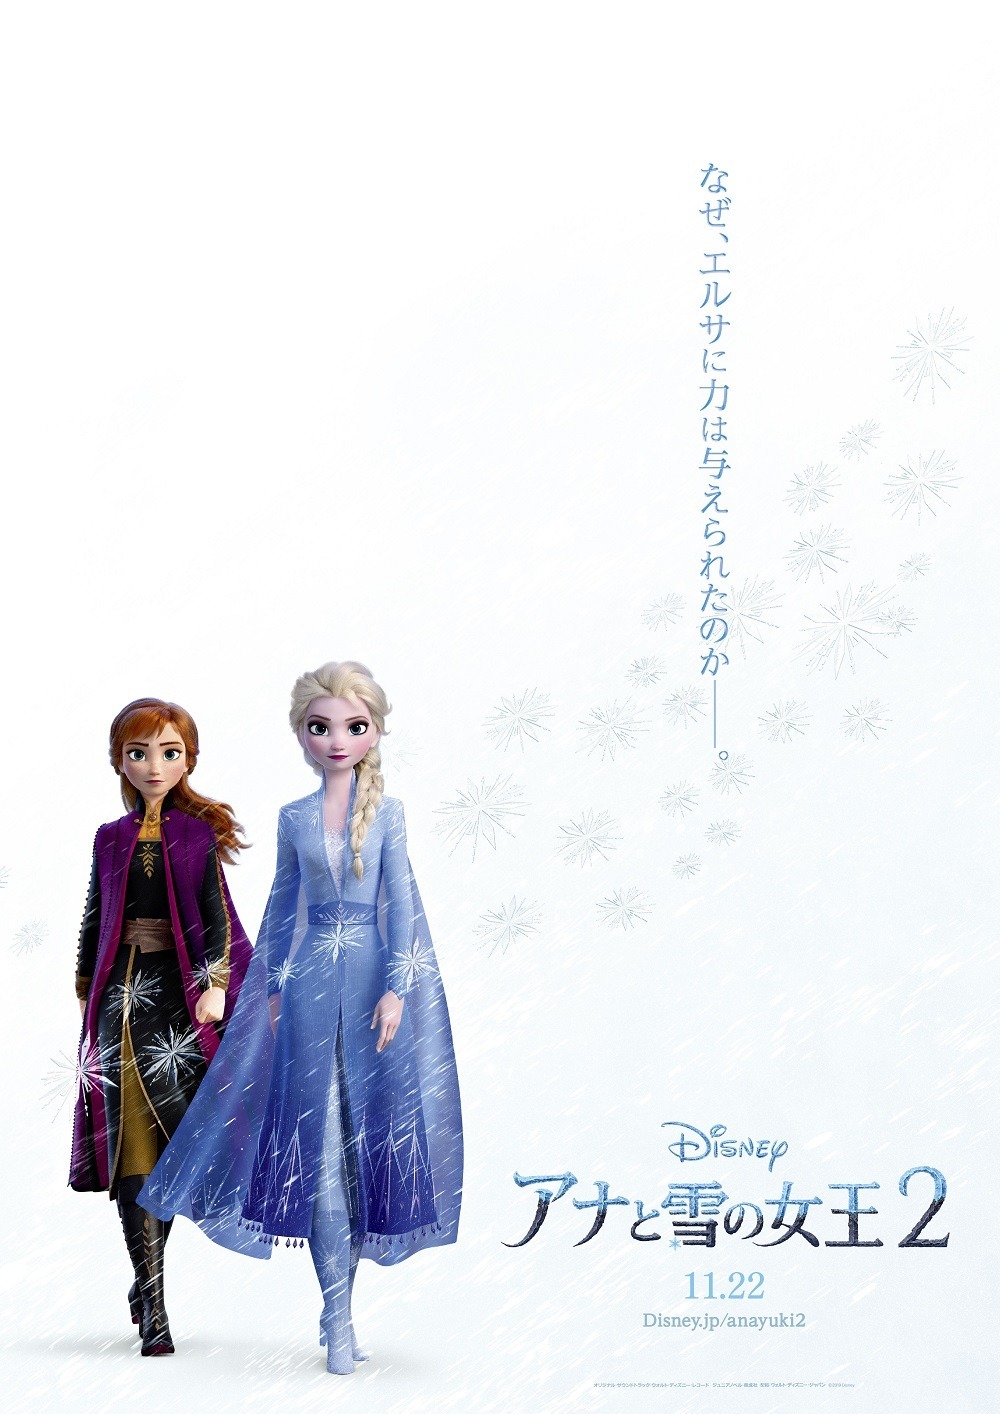 エルサの力の秘密とは アナと雪の女王2 日本限定ポスター Cinemacafe Net